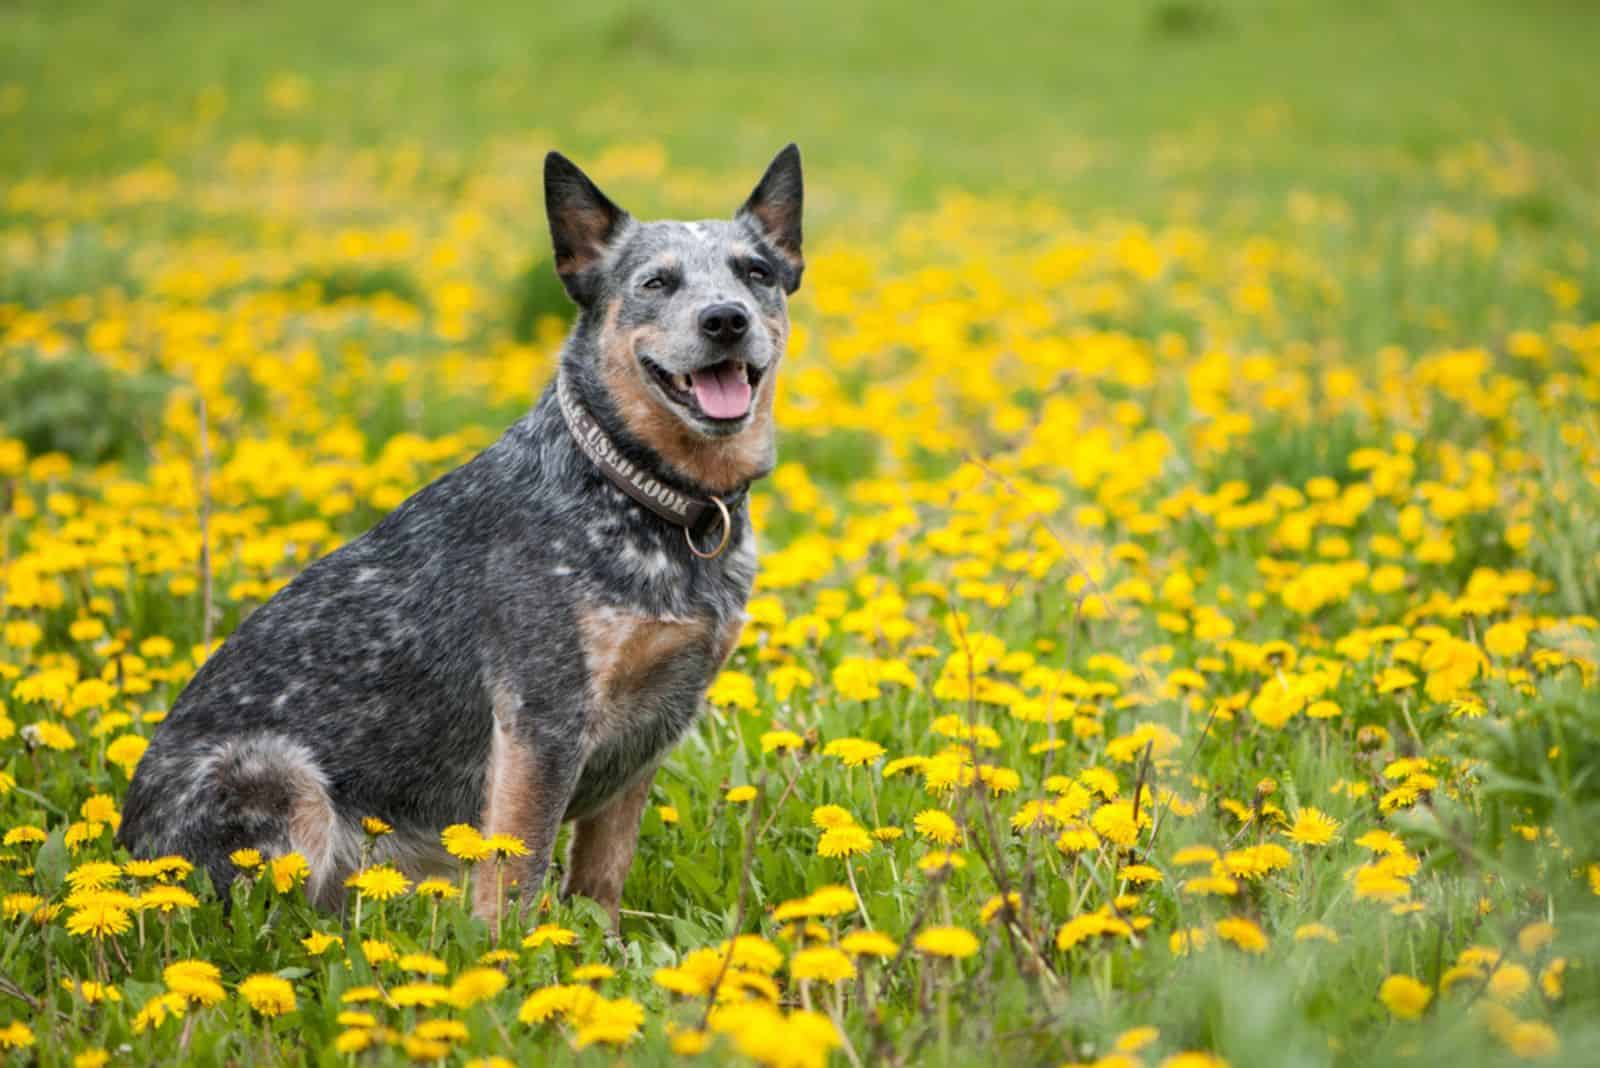 The Australian Cattle Dog in a flower field